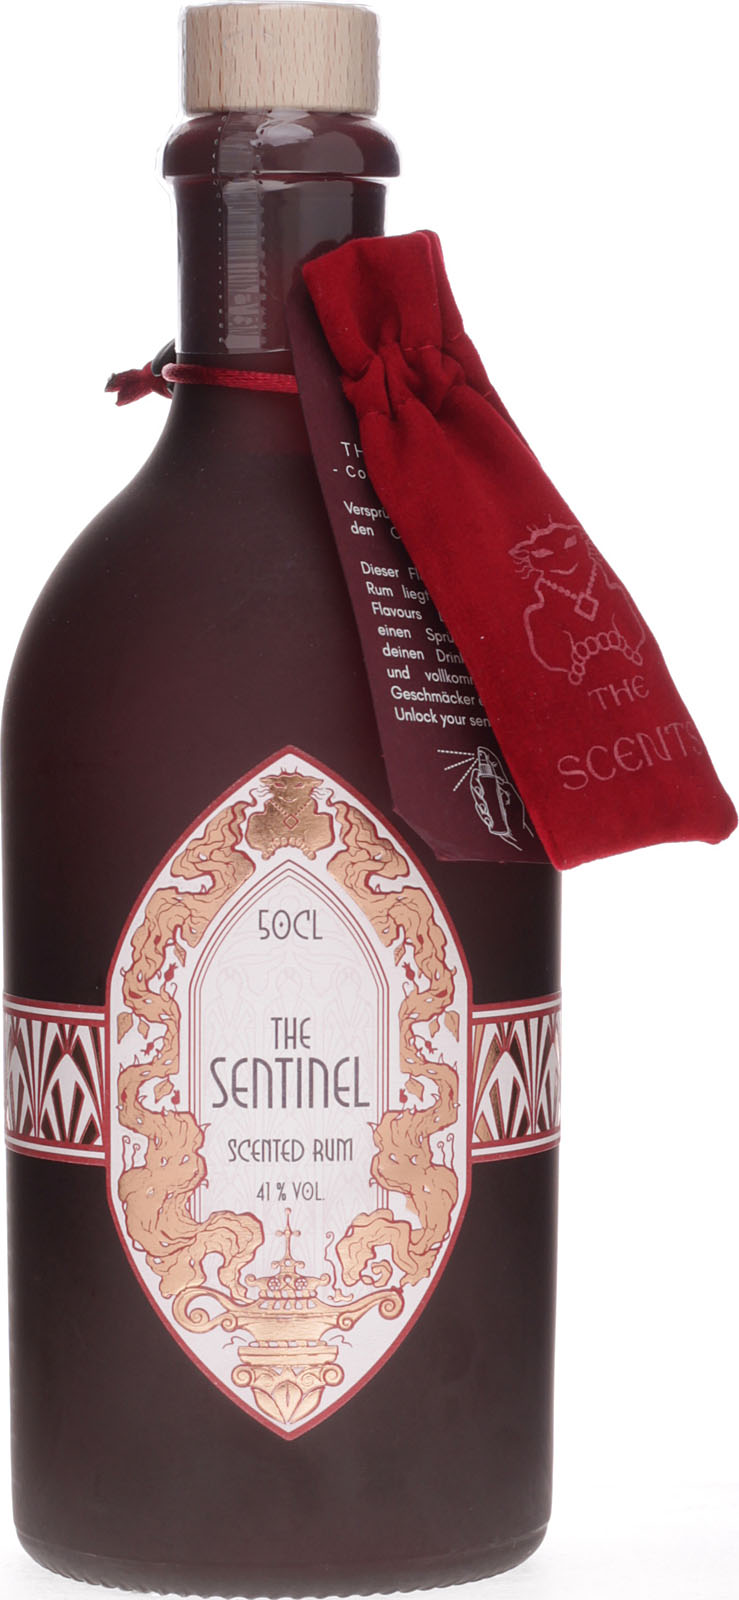 The Sentinel Liter Rum kauf uns bei Scented im 0,5 Shop